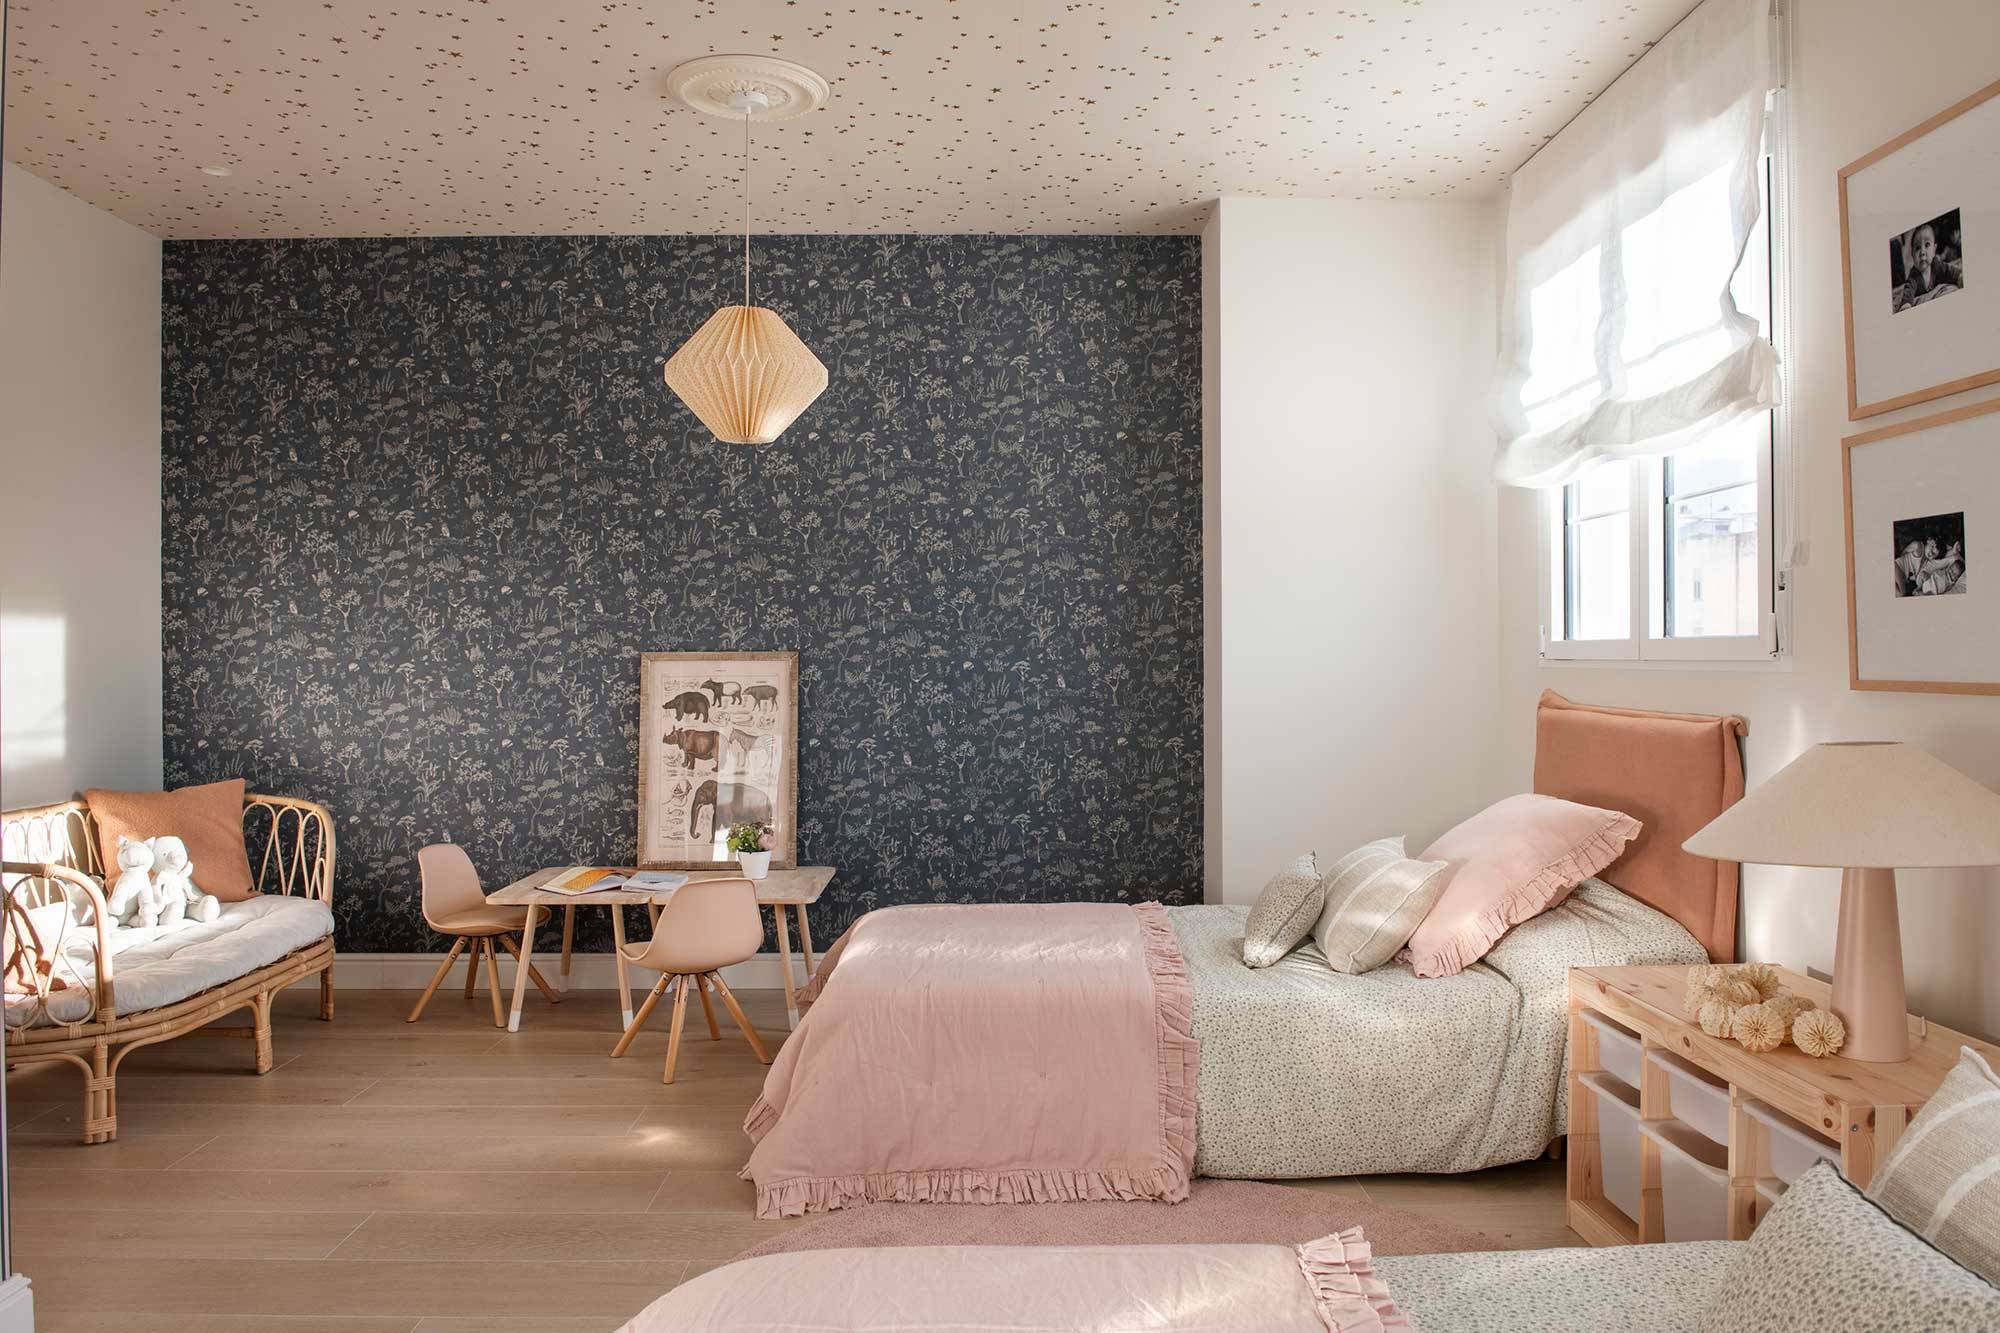 Habitación infatil con dos camas y papel pintado en la pared